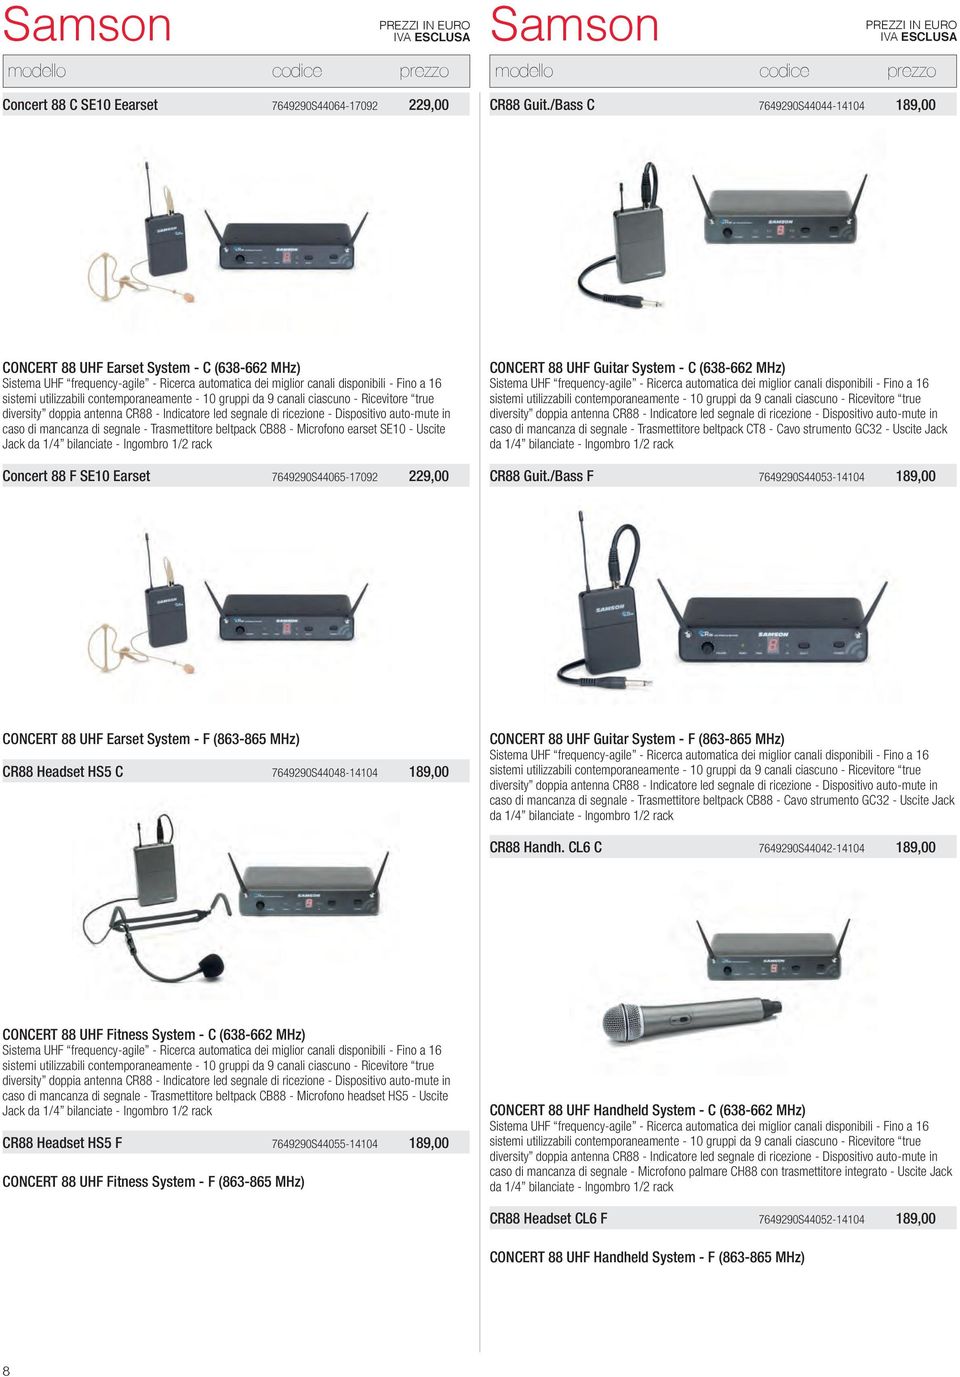 contemporaneamente - 10 gruppi da 9 canali ciascuno - Ricevitore true diversity doppia antenna CR88 - Indicatore led segnale di ricezione - Dispositivo auto-mute in caso di mancanza di segnale -